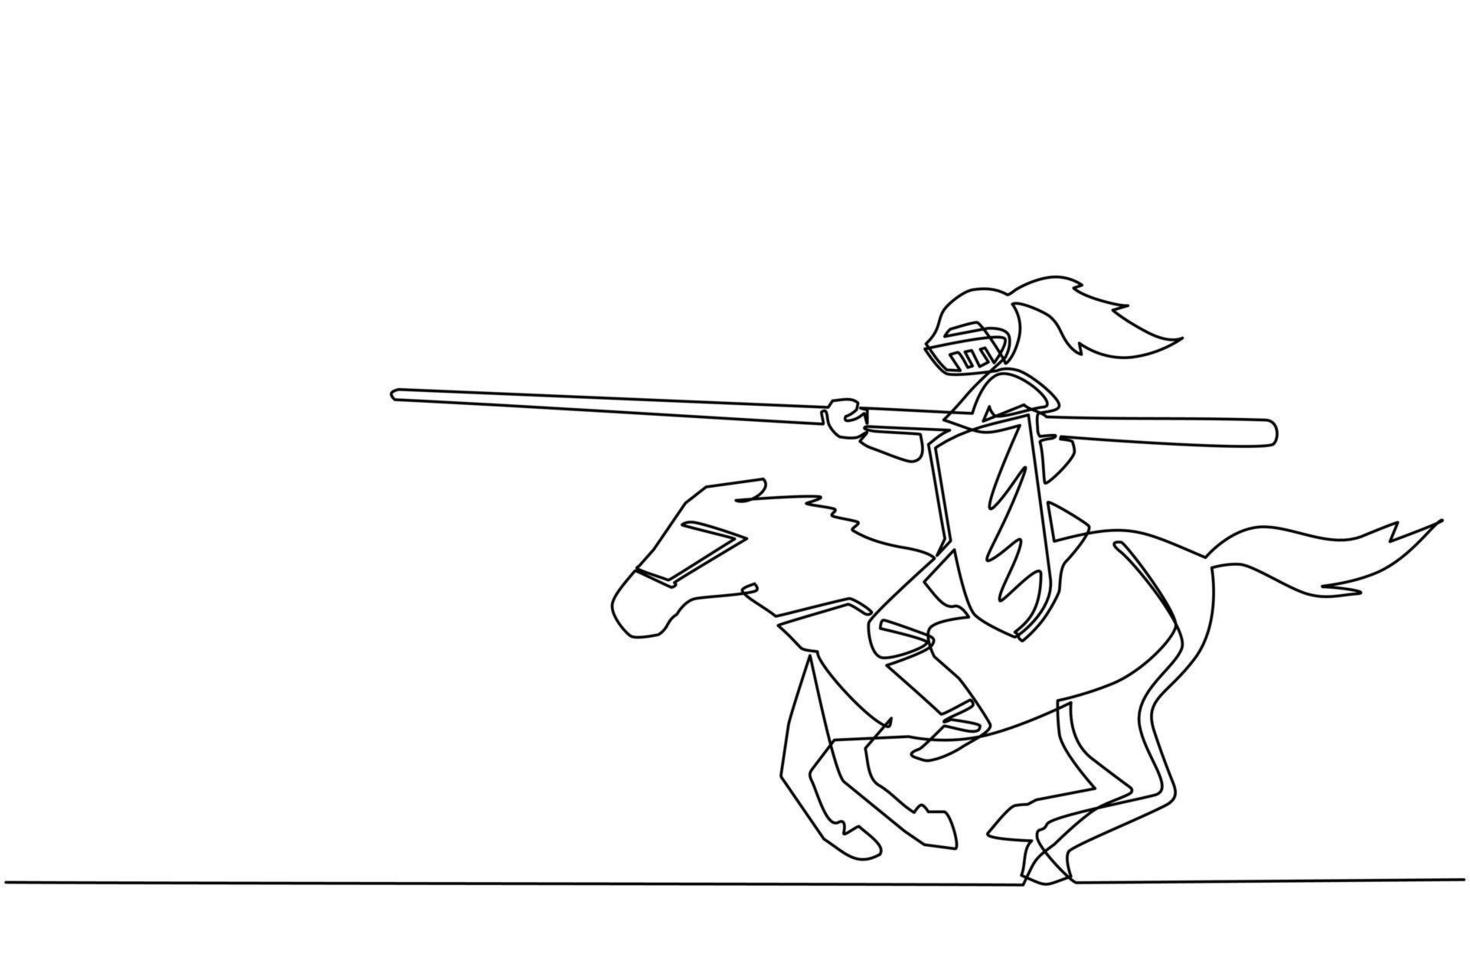 fortlaufende einzeilige zeichnung mittelalterlicher ritterturnier-cartoon-komposition mit reiter in rüstungen im jousting-wettbewerb. mittelalterliches heraldisches symbol. einzeiliges zeichnen design vektorillustration vektor